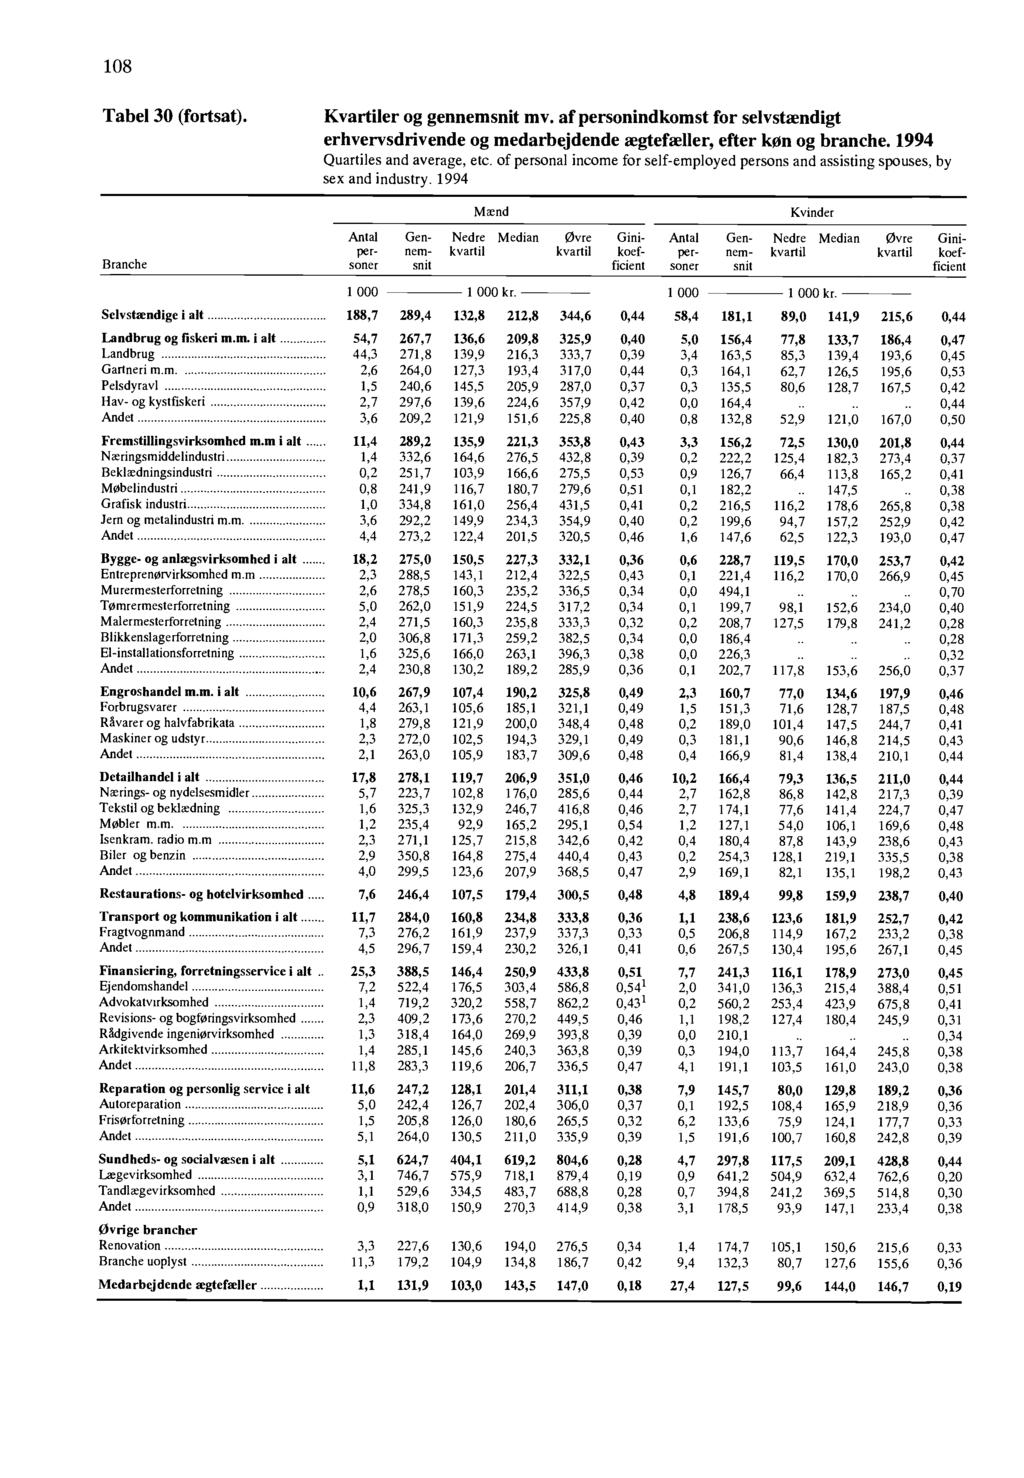 108 Tabel 30 (fortsat) Kvartiler og gennemsnit mv of personindkomst for selvstændigt erhvervsdrivende og medarbejdende ægtefa Iler, efter kon og branche 1994 Quartiles and average, etc of personal